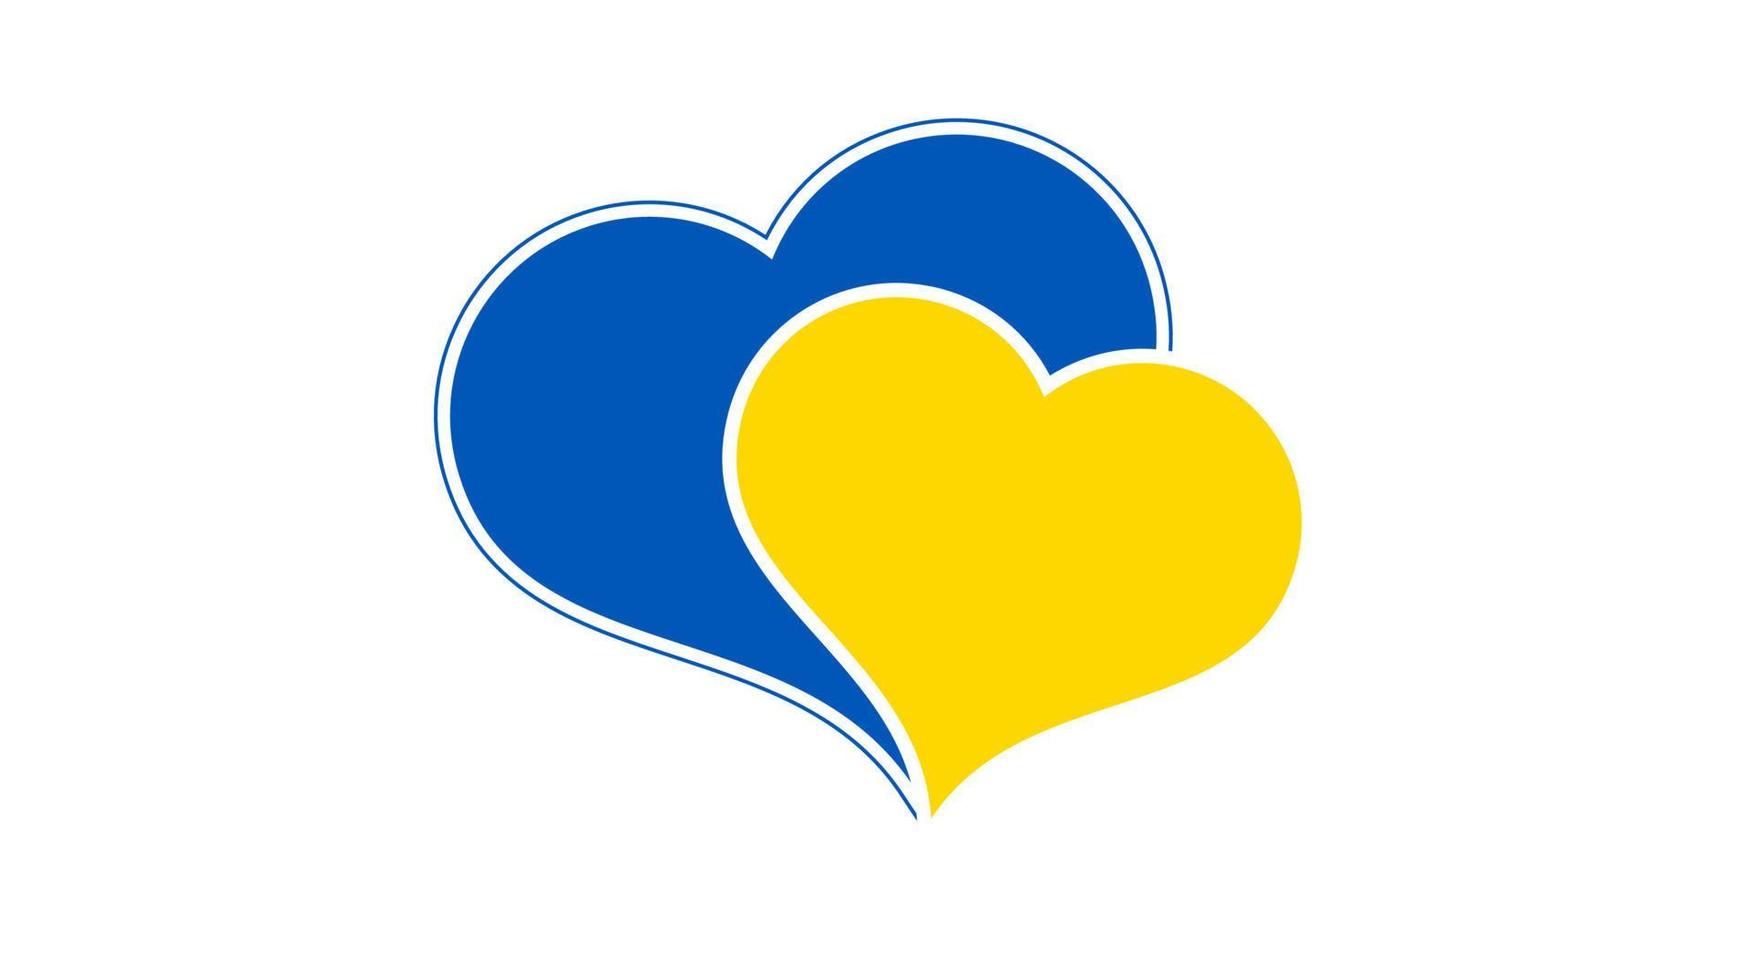 hart in oekraïens kleuren vector